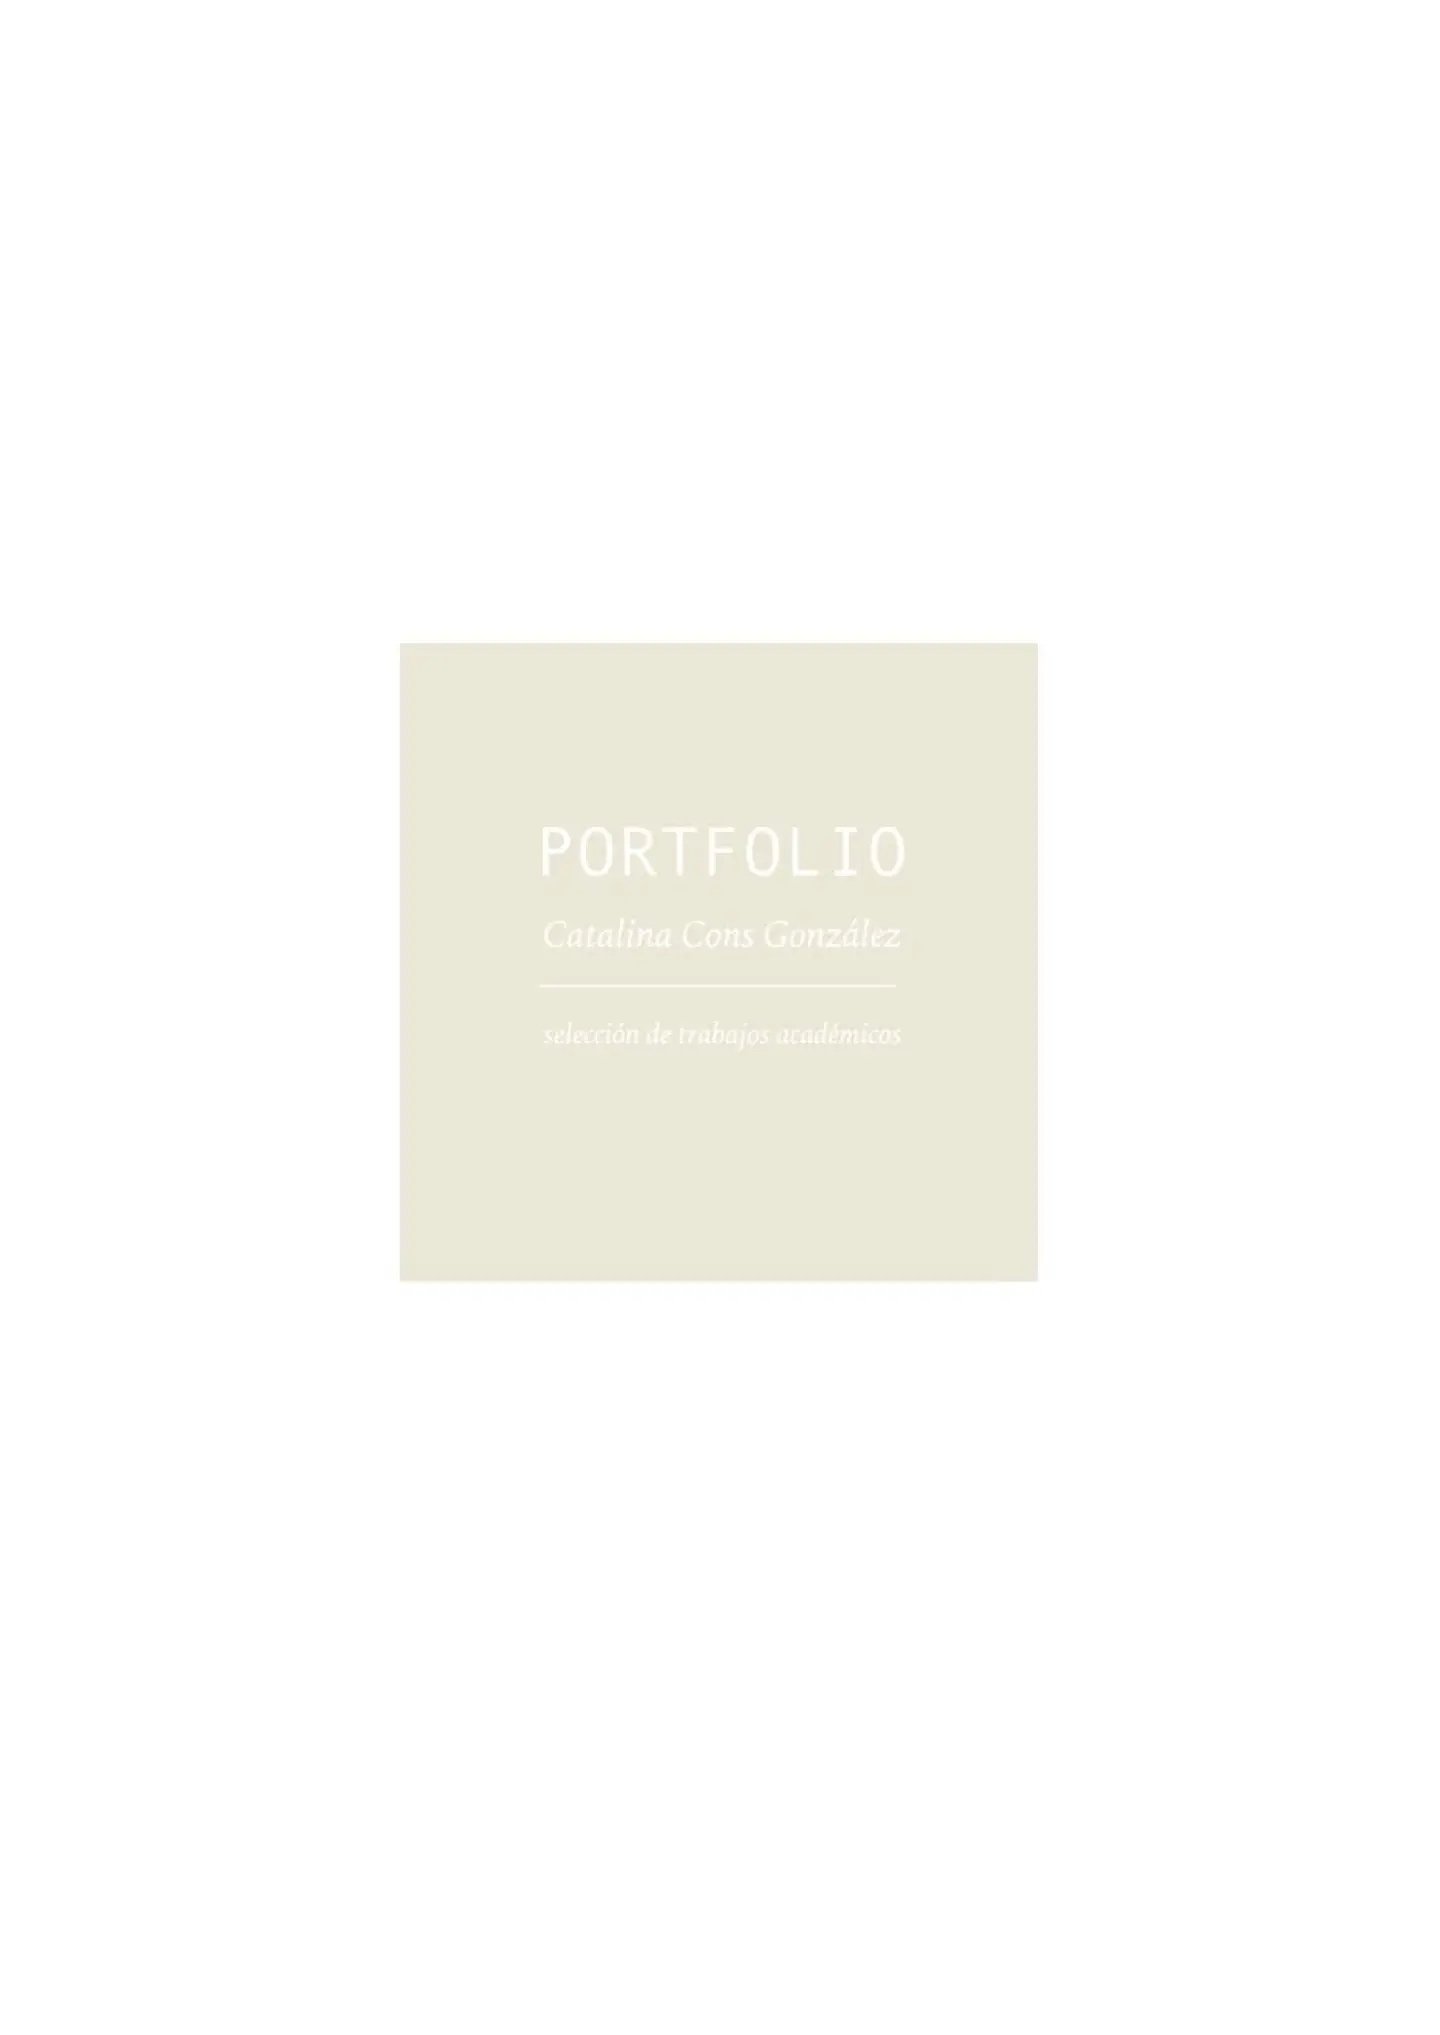 Portfolio 2020_thumbnail.jpg